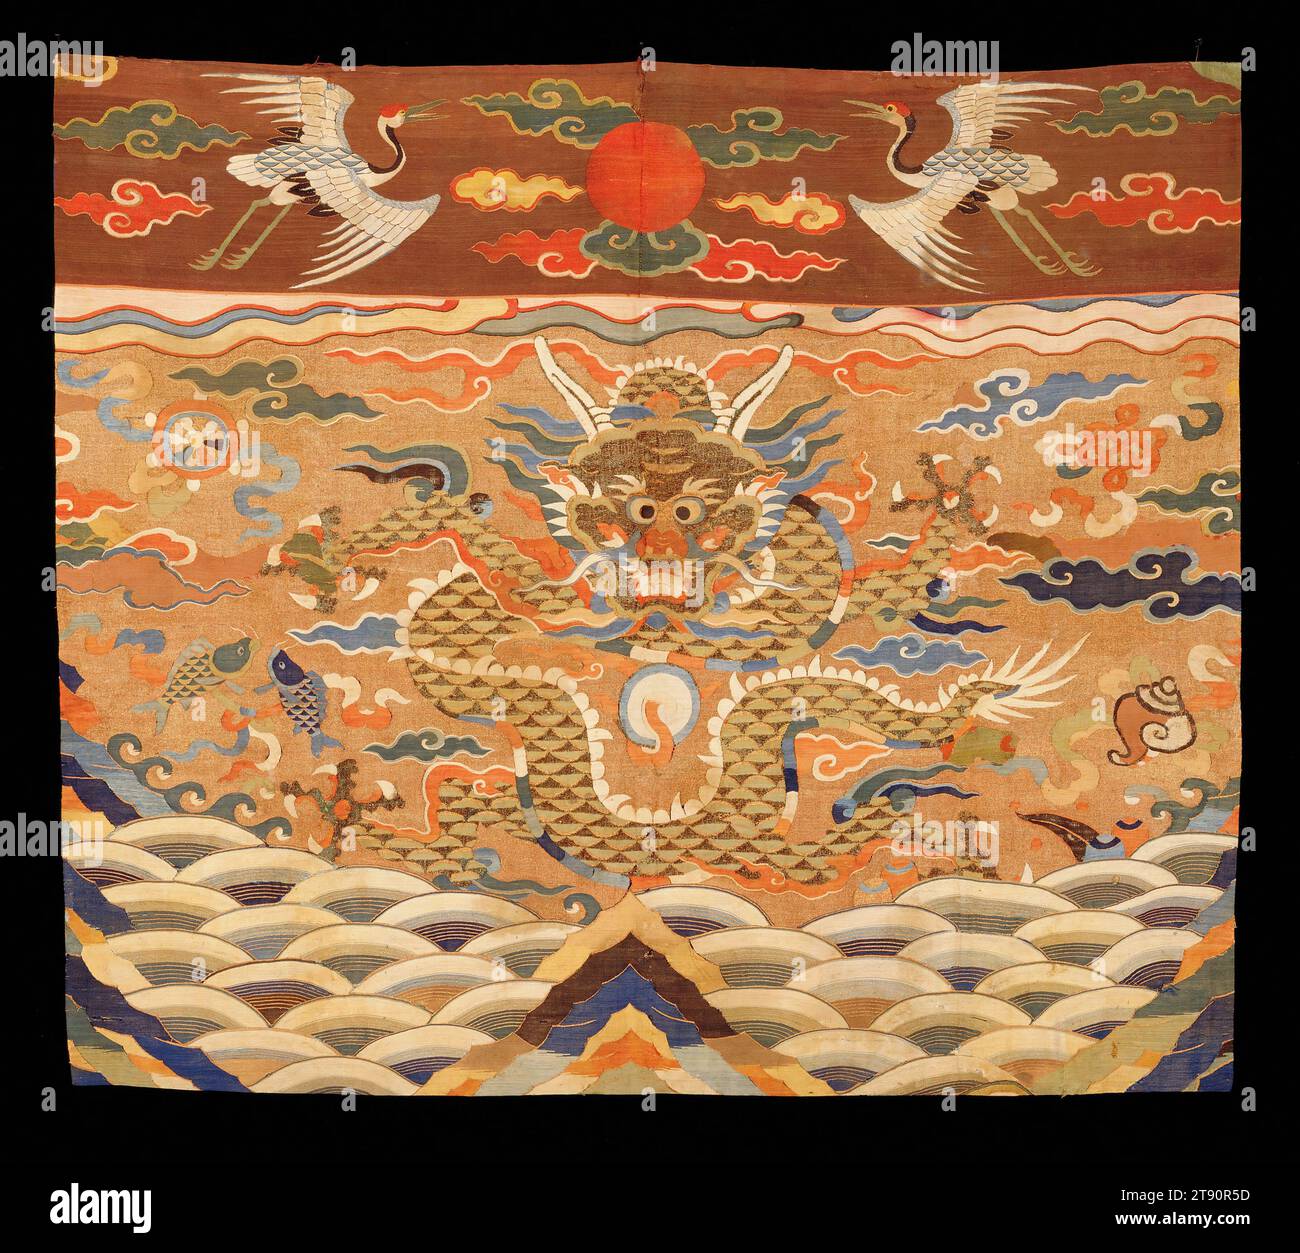 Altar Frontal, Anfang des 17. Jahrhunderts, H. 33 ¼ in x W. 38 ¼ in. (83,82 x 96,52 cm), Seidenteppich (Kesi), China, 17. Jahrhundert, der obere Teil dieses Altarfrontals zeigt eine Sonnenscheibe, flankiert von mandschurischen Kränen in einem Wolkenfeld. Der Hauptabschnitt zeigt einen großen Drachen in einer Himmelslandschaft aus Wolken, Bergen und Wellen. In der gesamten Komposition ist ein verstreutes Schema der acht Schätze des Buddhismus, wie die Muschel, der endlose Knoten, das Rad des Gesetzes und die zwei goldenen Fische Stockfoto